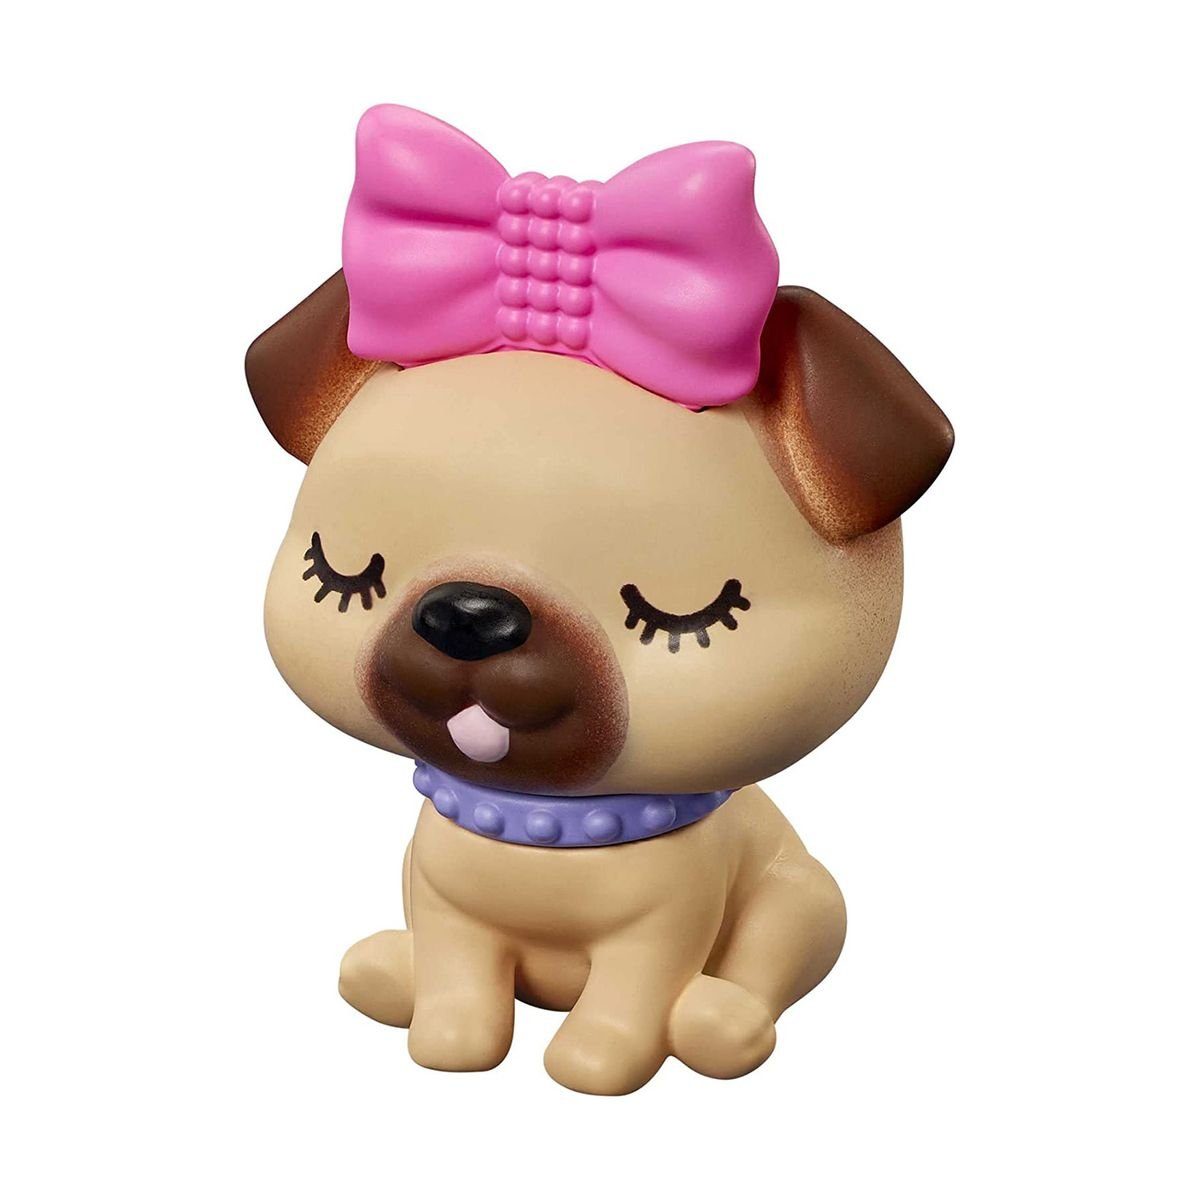 HGR60 - Puppe - Extra Mattel - Mattel® Barbie Styling-Zubehör mit Deluxe Anziehpuppe und Tier